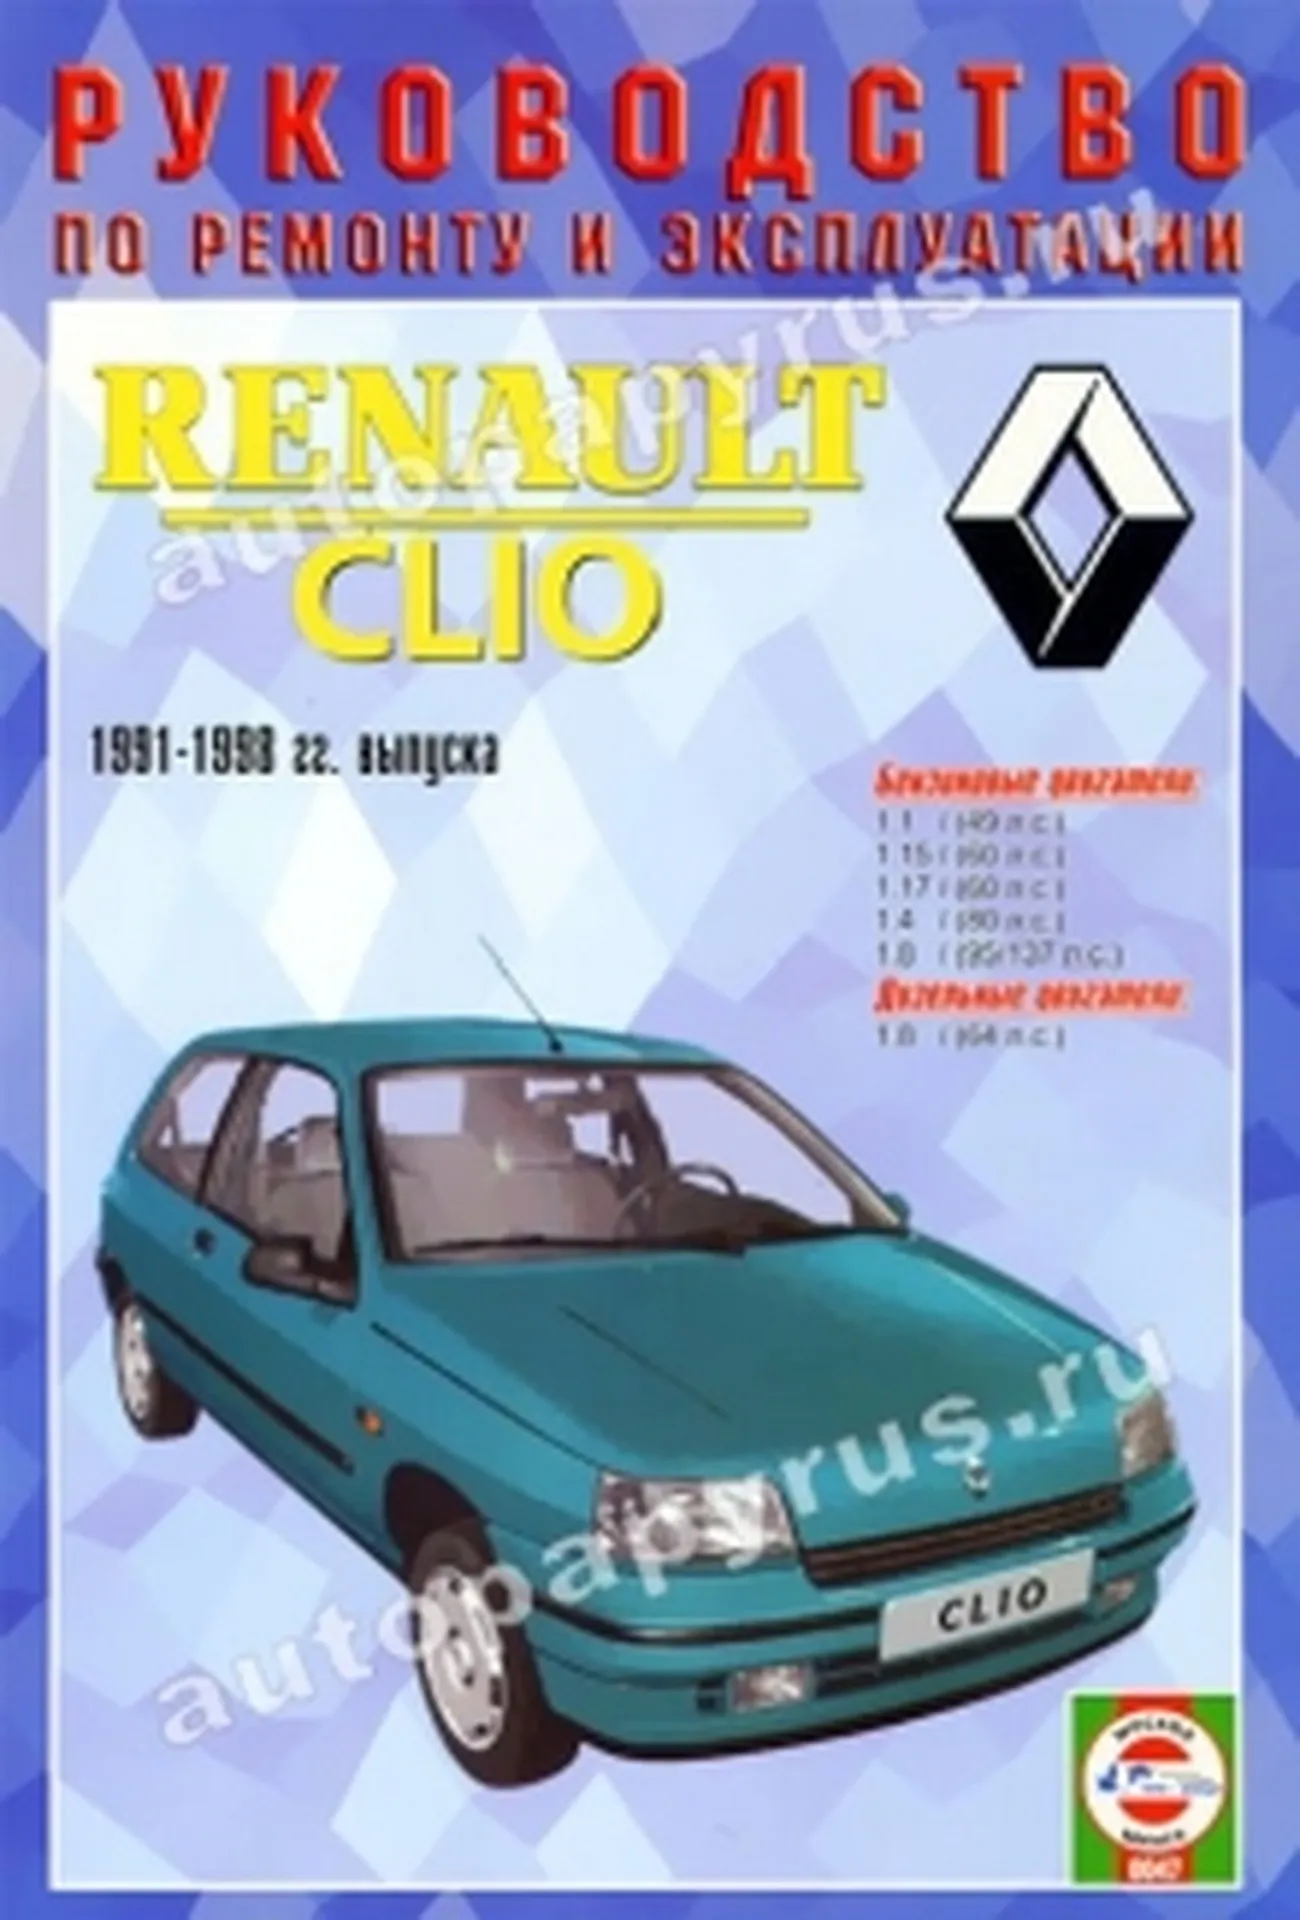 Книга: RENAULT CLIO (б , д) 1991-1998 г.в., рем., экспл., то | Чижовка